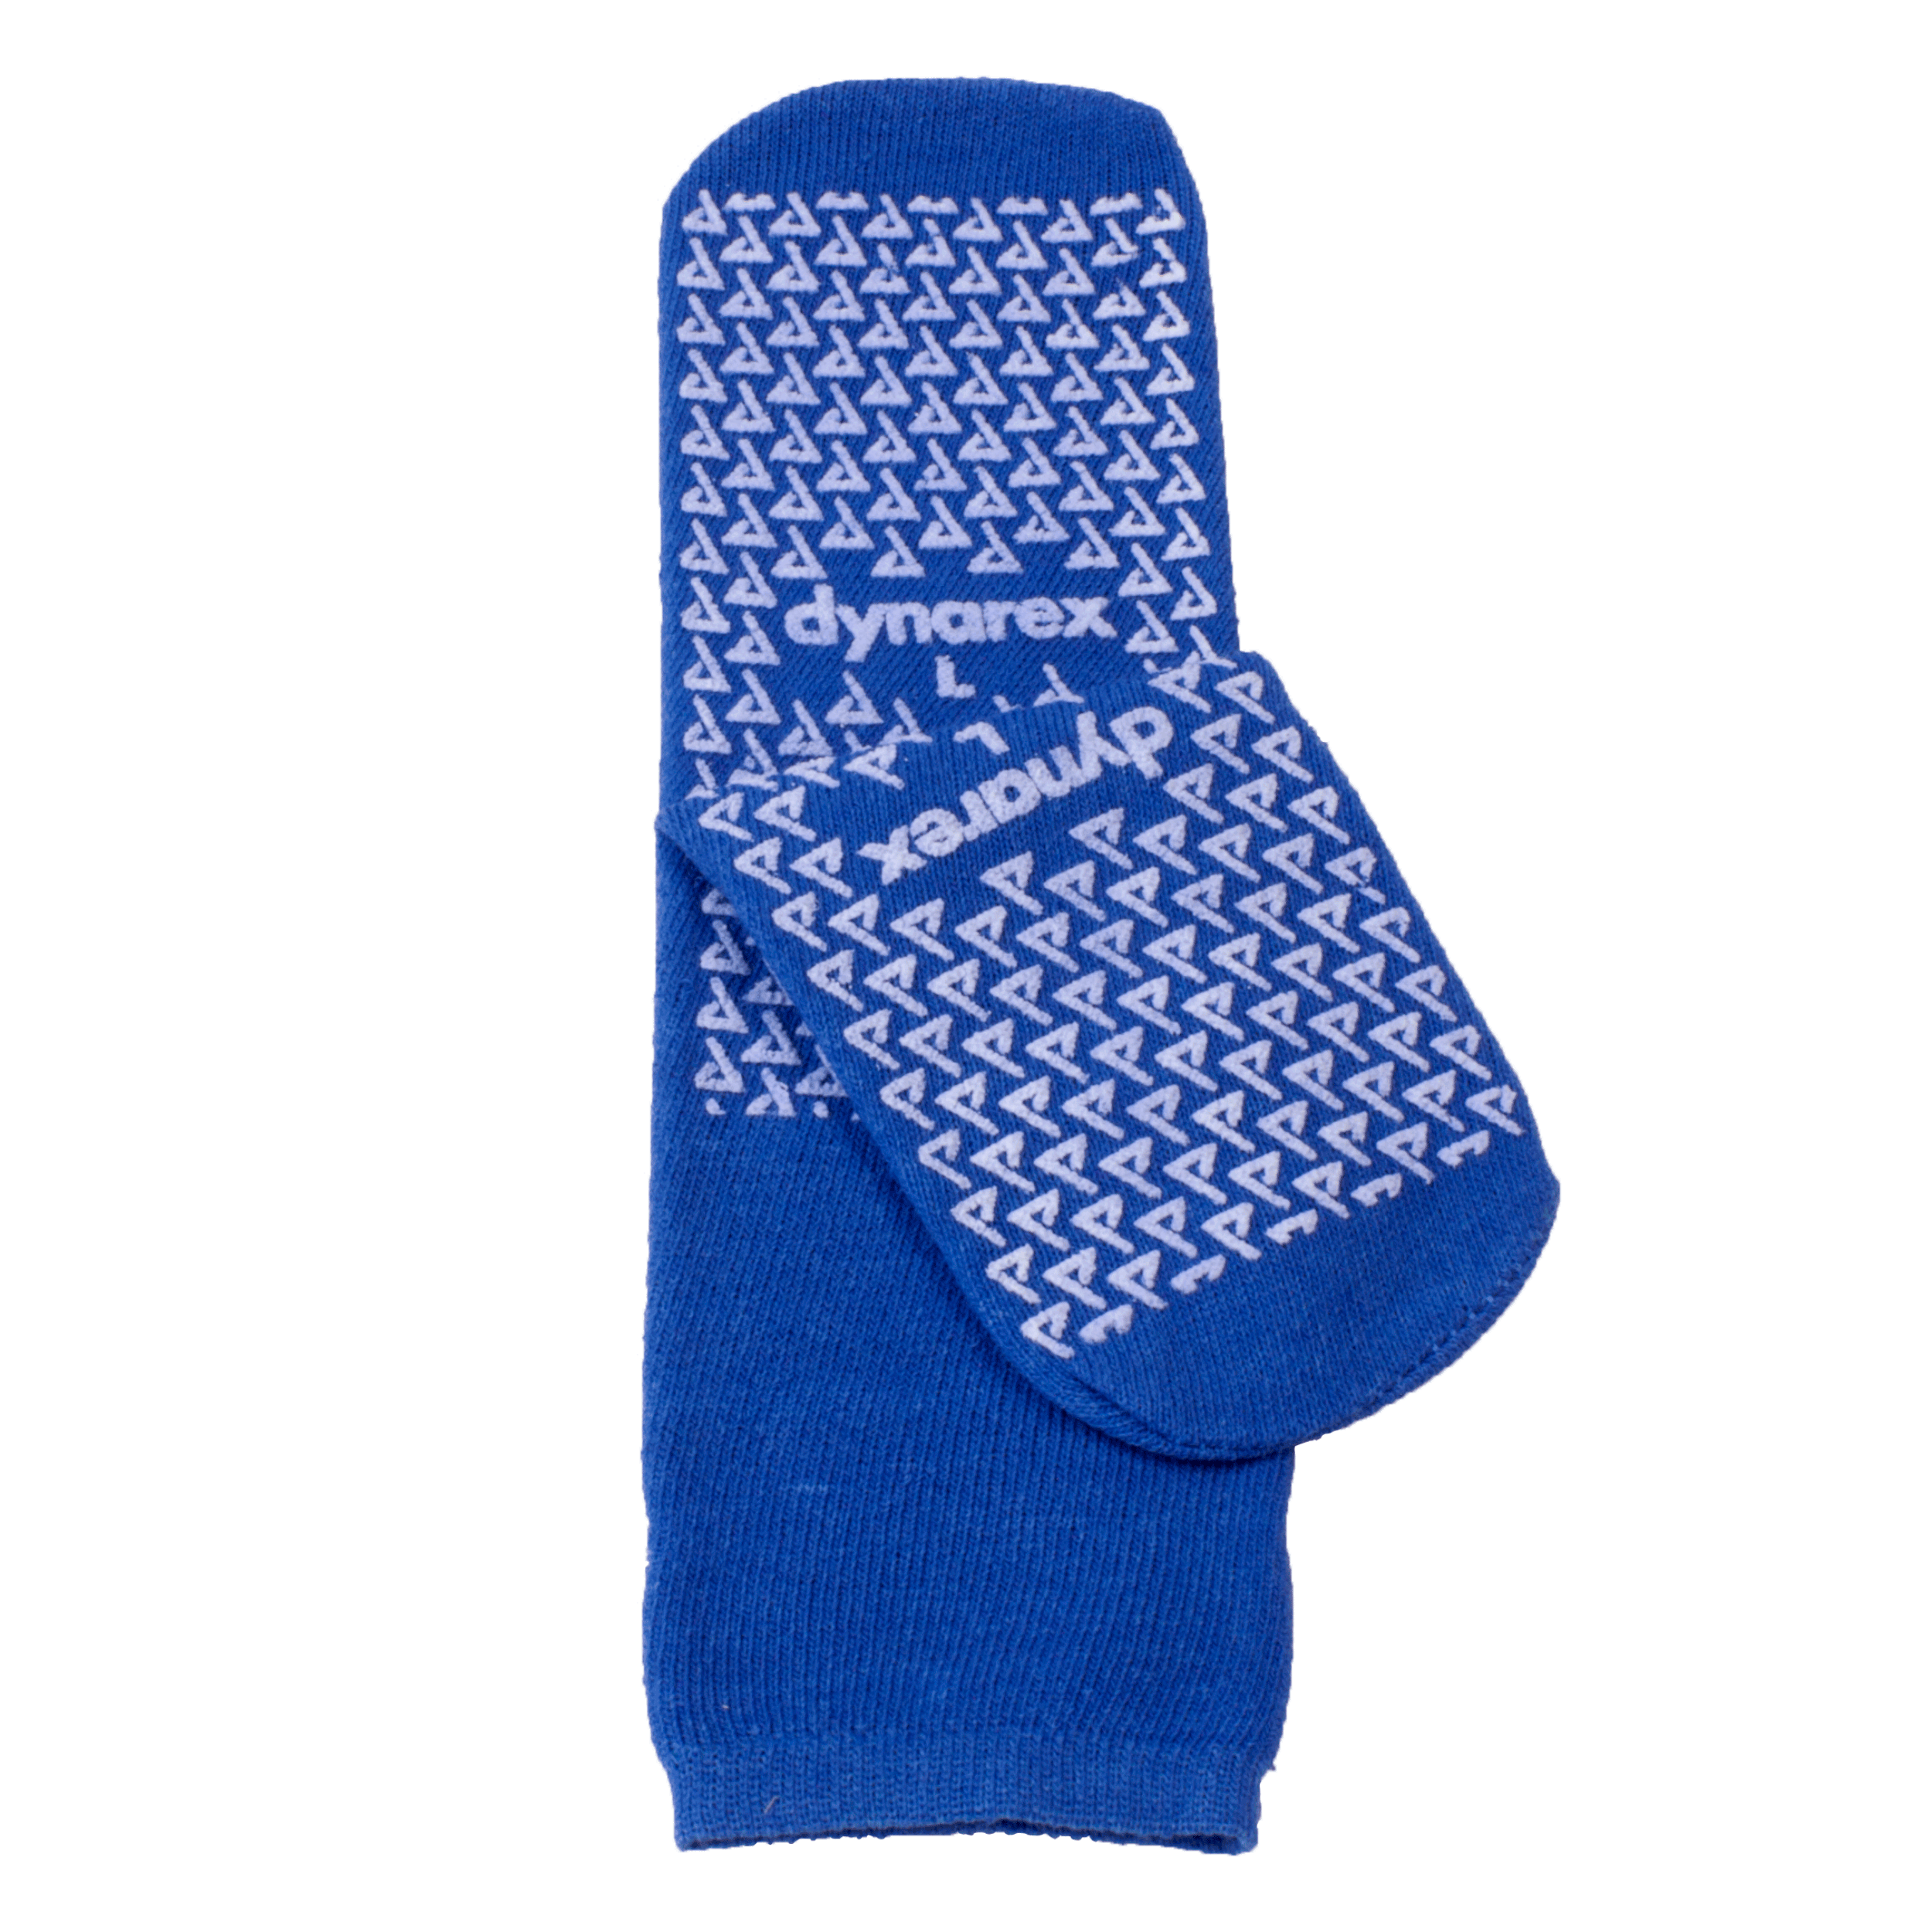 Double-Sided Slipper Socks - Large, Dark Blue